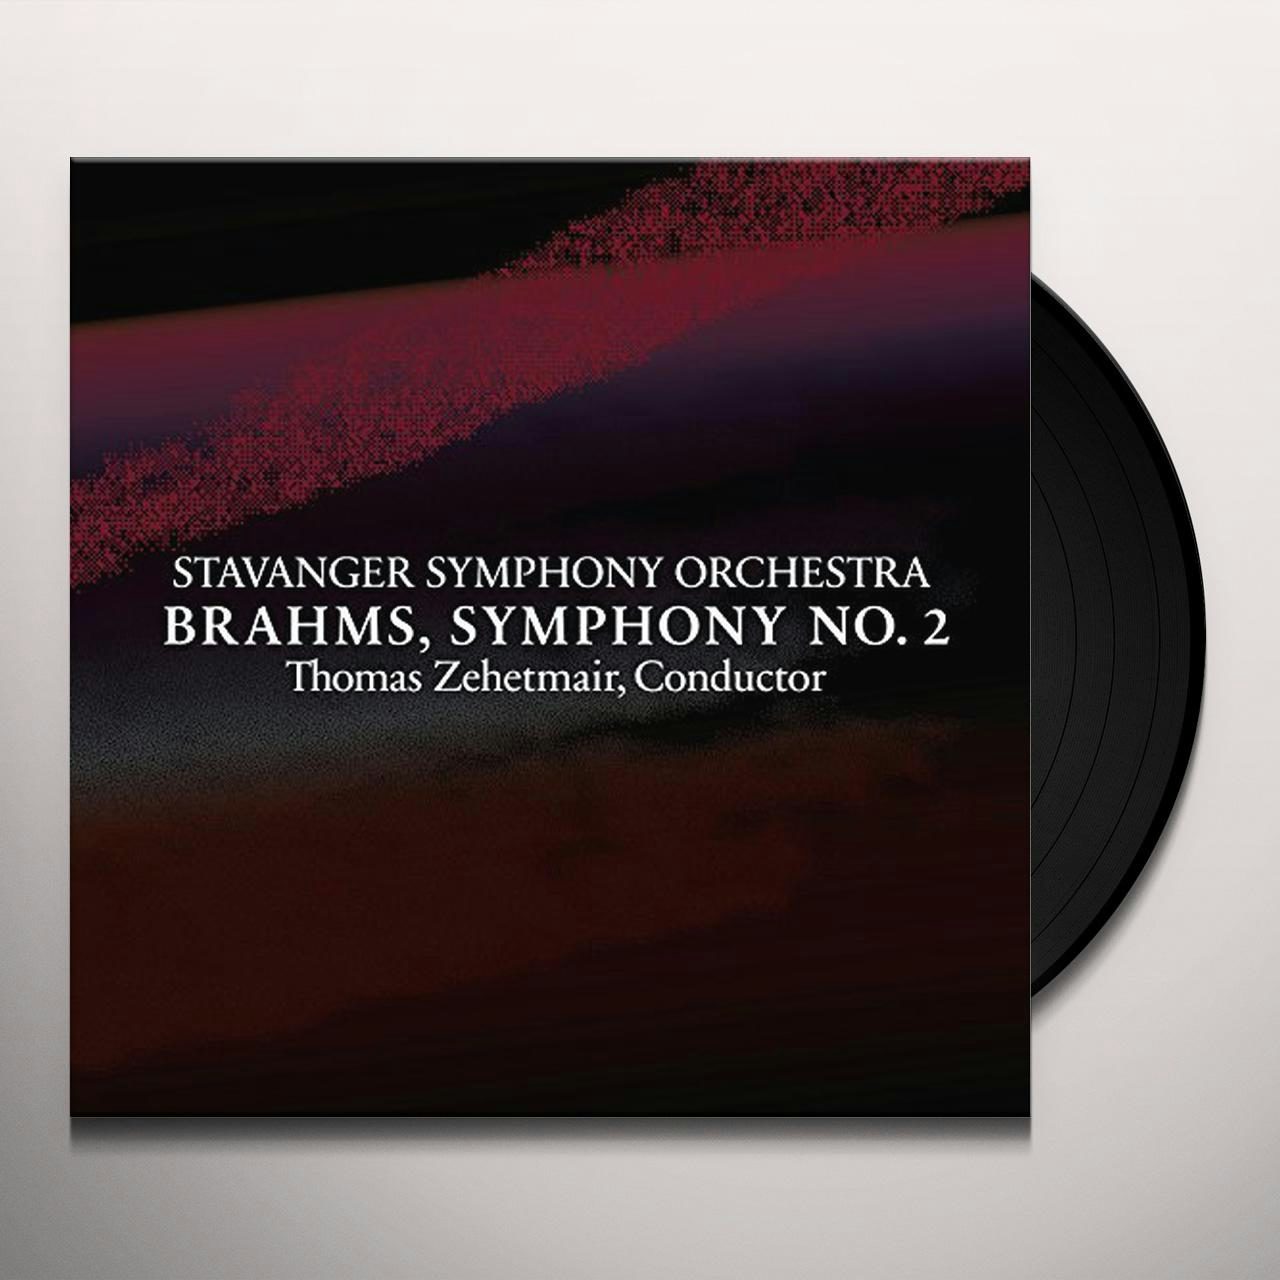 Stavanger Symphony Orchestra BRAHMS SYMPHONY NO. 2 IN D MAJOR OP